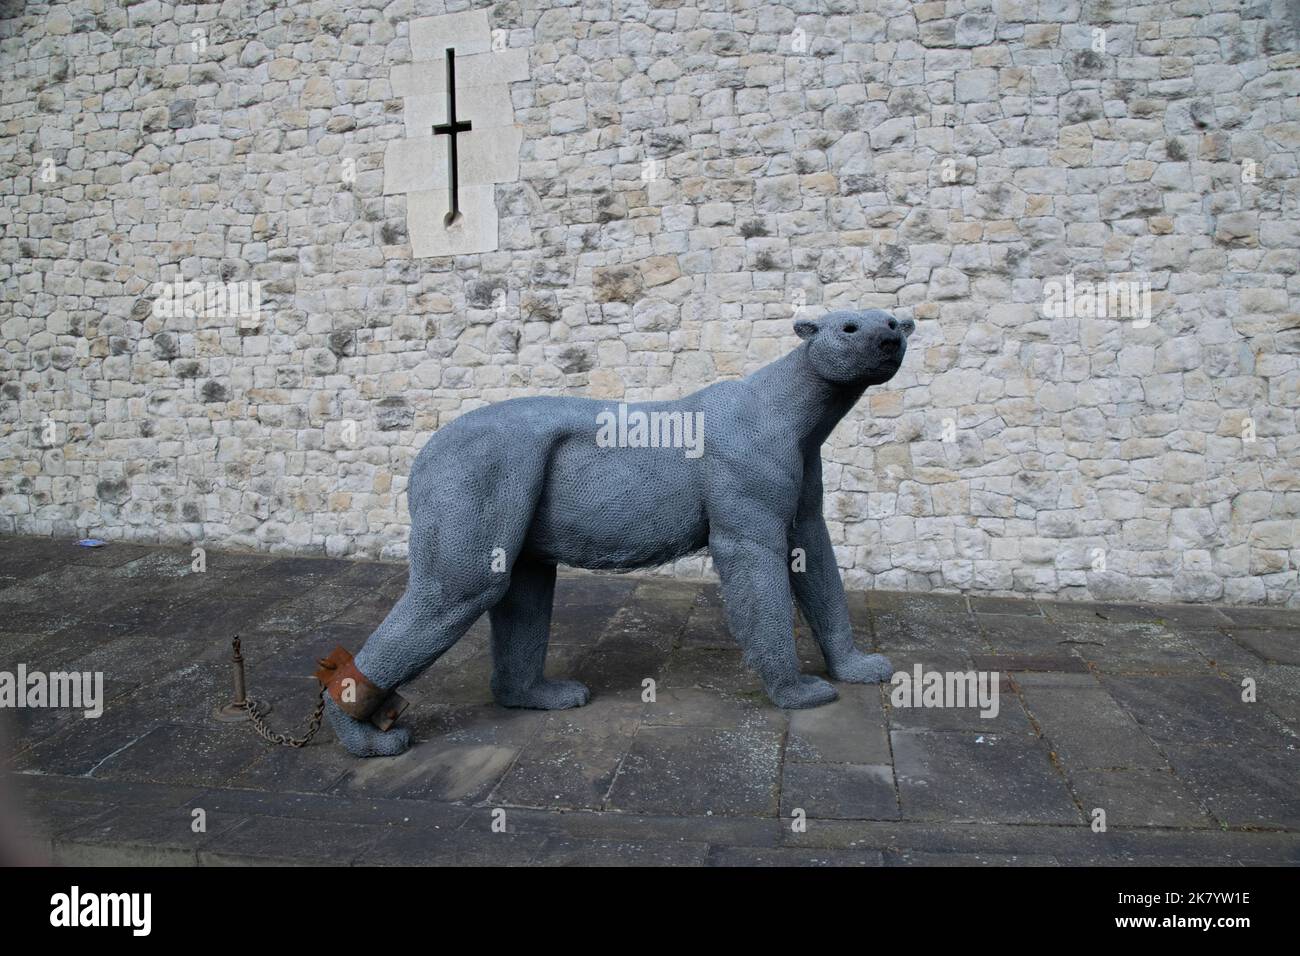 La sculpture de l'ours polaire, qui fait partie d'une exposition à la Tour de Londres, montre des animaux qui étaient autrefois logés dans le palais avant que la collection ne soit déplacée Banque D'Images